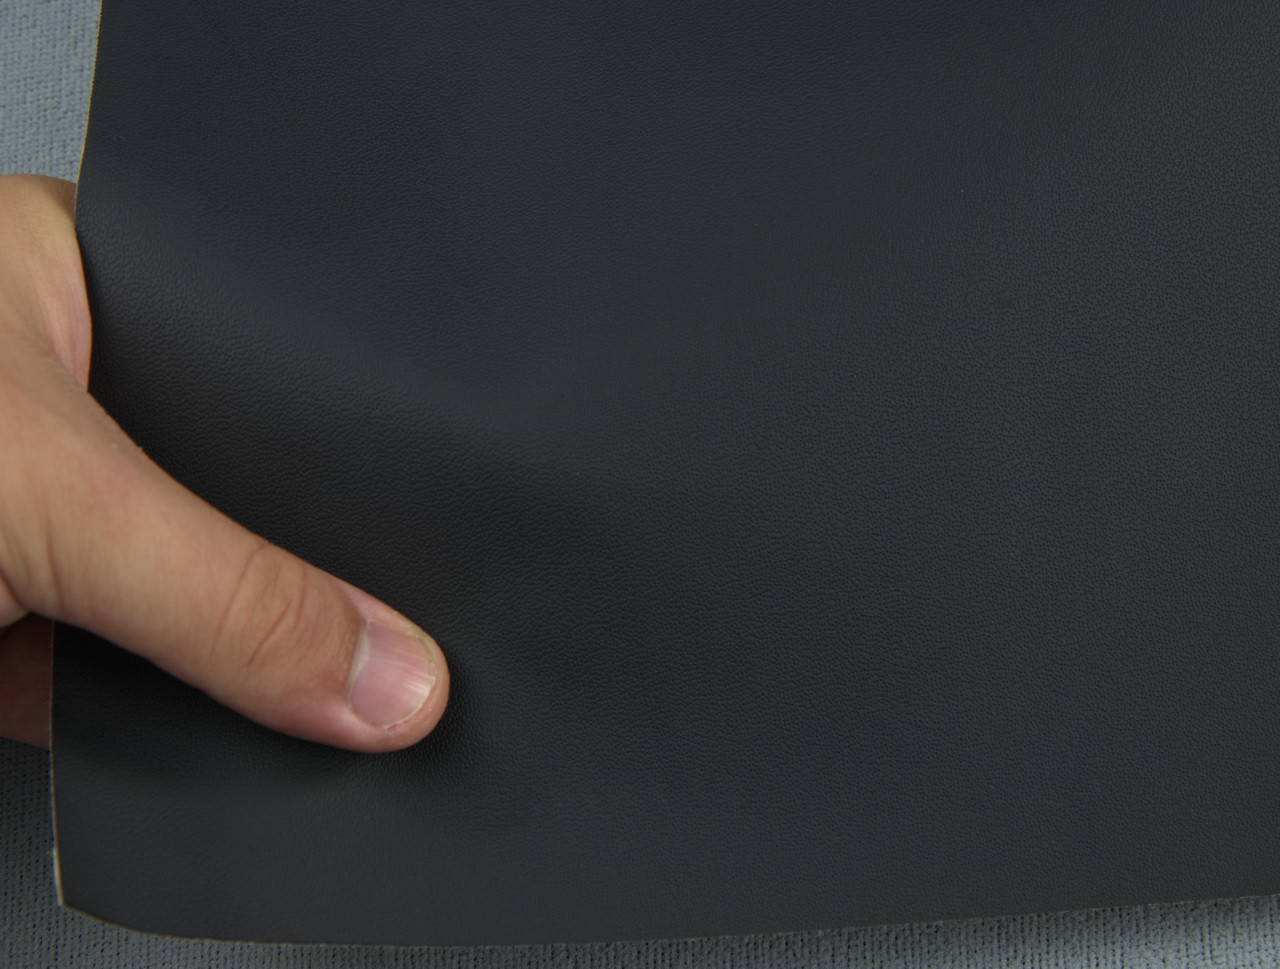 Автомобильный кожзам BENTLEY 1236 темно-серый, на тканевой основе, ширина 140см, Турция детальная фотка